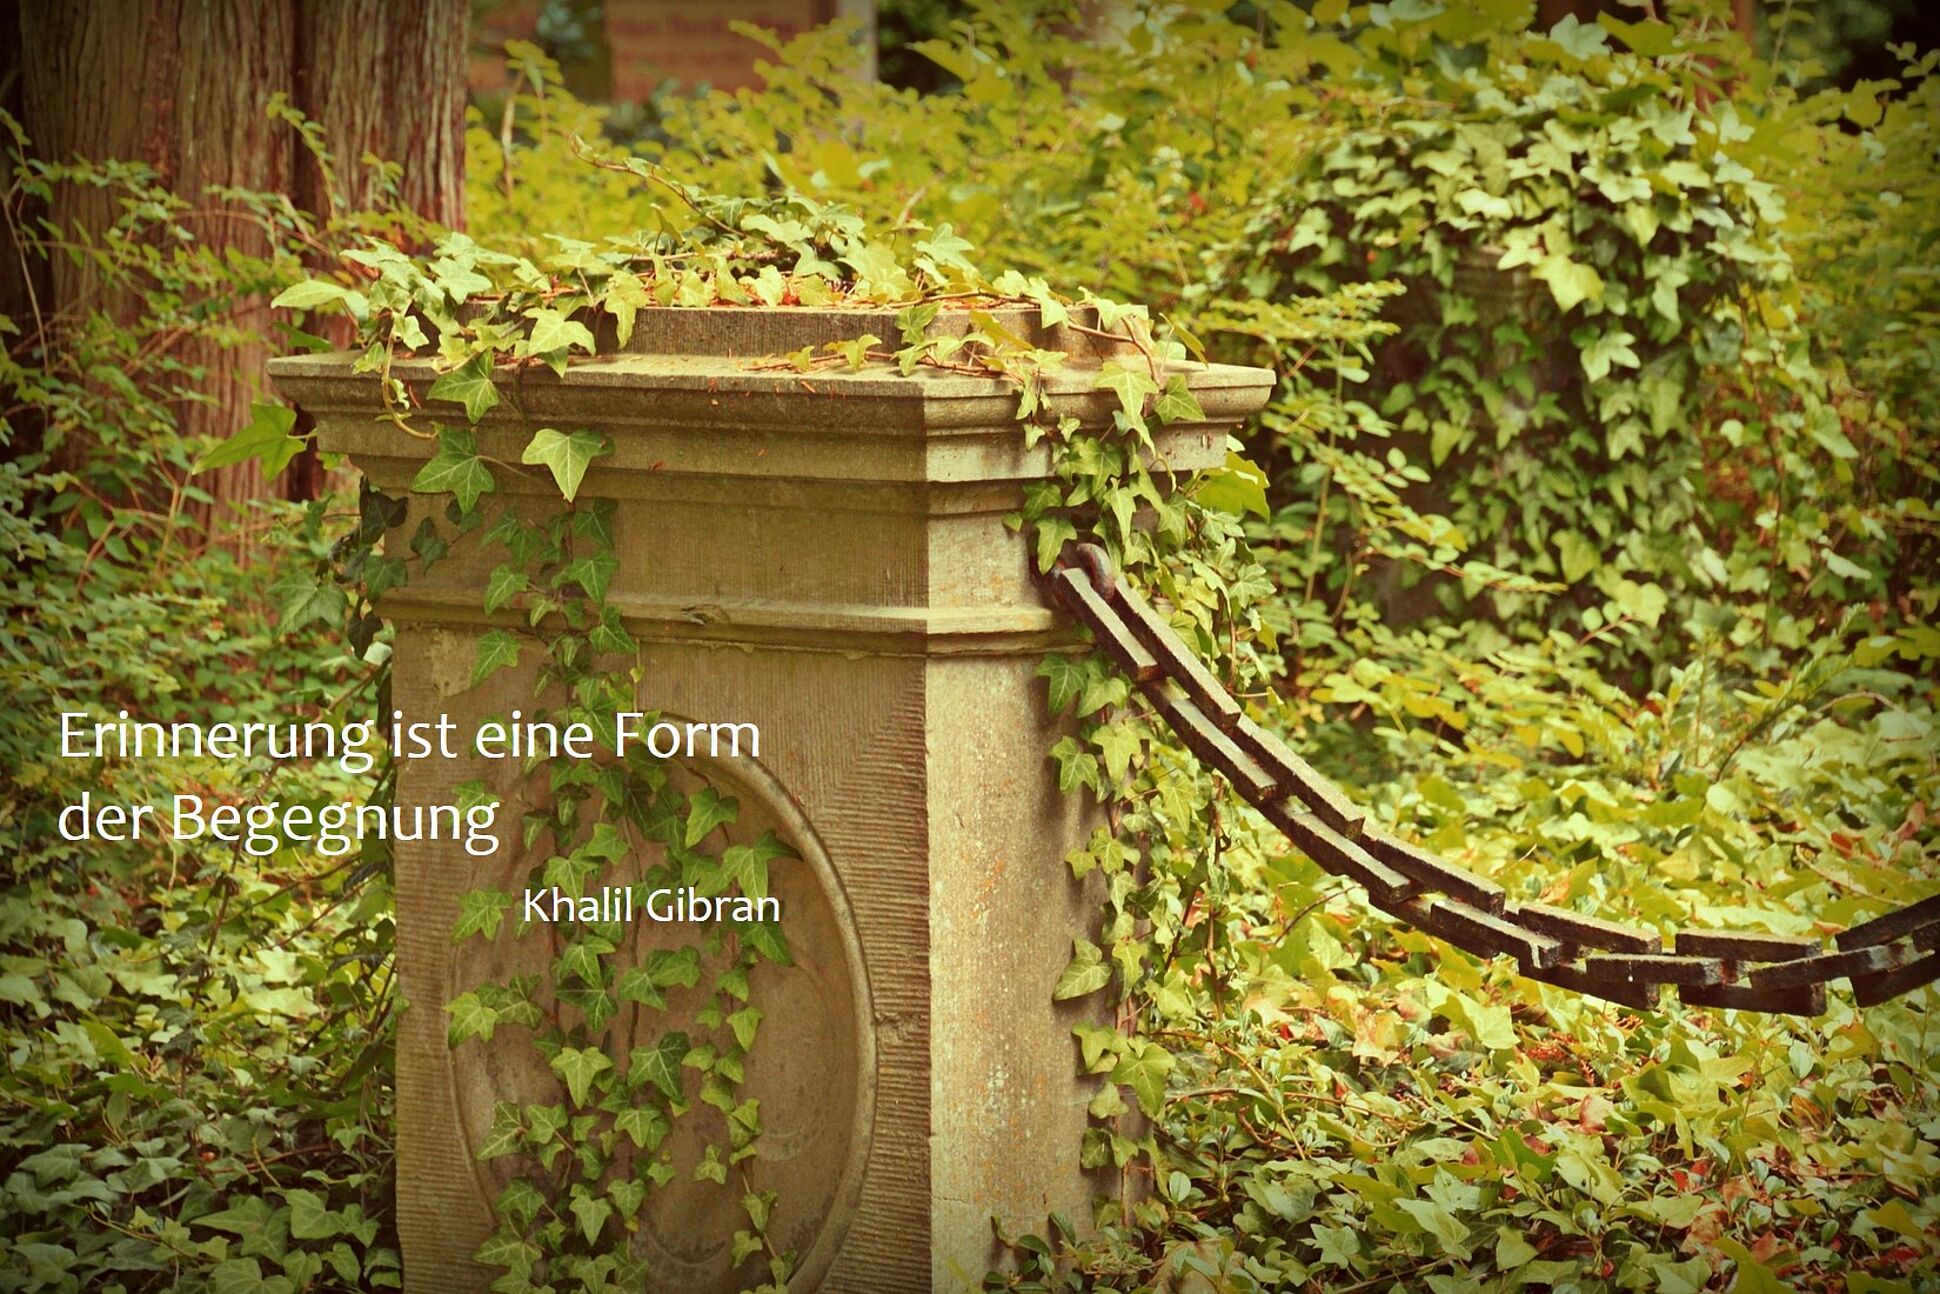 Ein mit Efeu bewachsener Grabstein umgeben von Hecken und Bäumen. Im Vordergrund der weiße Schriftzug "Erinnerung ist eine Form von Begegnung" verfasst von Khalil Gibran